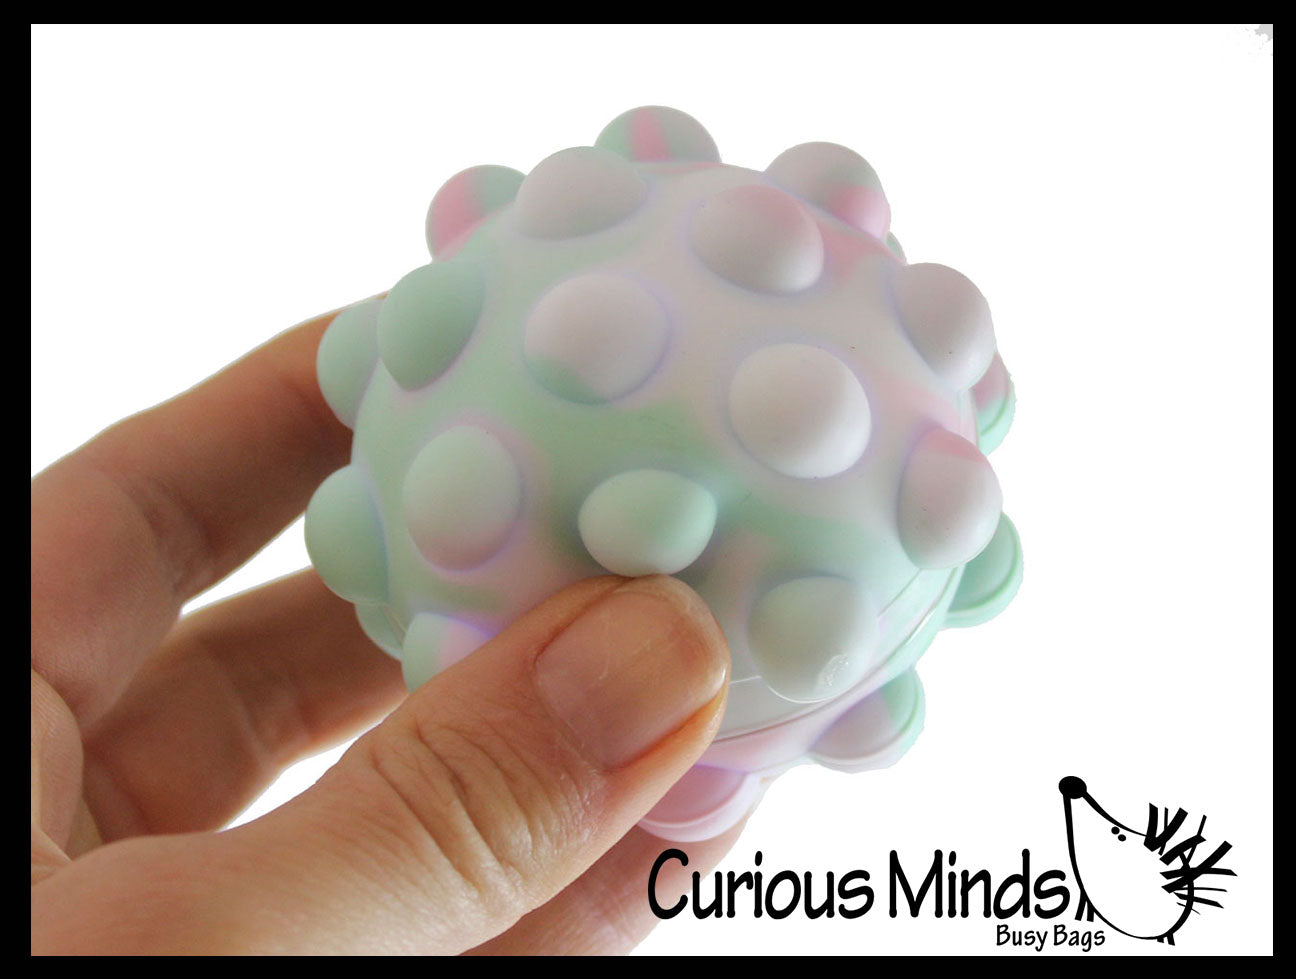 Light Up, Squeeze, Pop It Ball Fidget Toy - Wholesale - CB